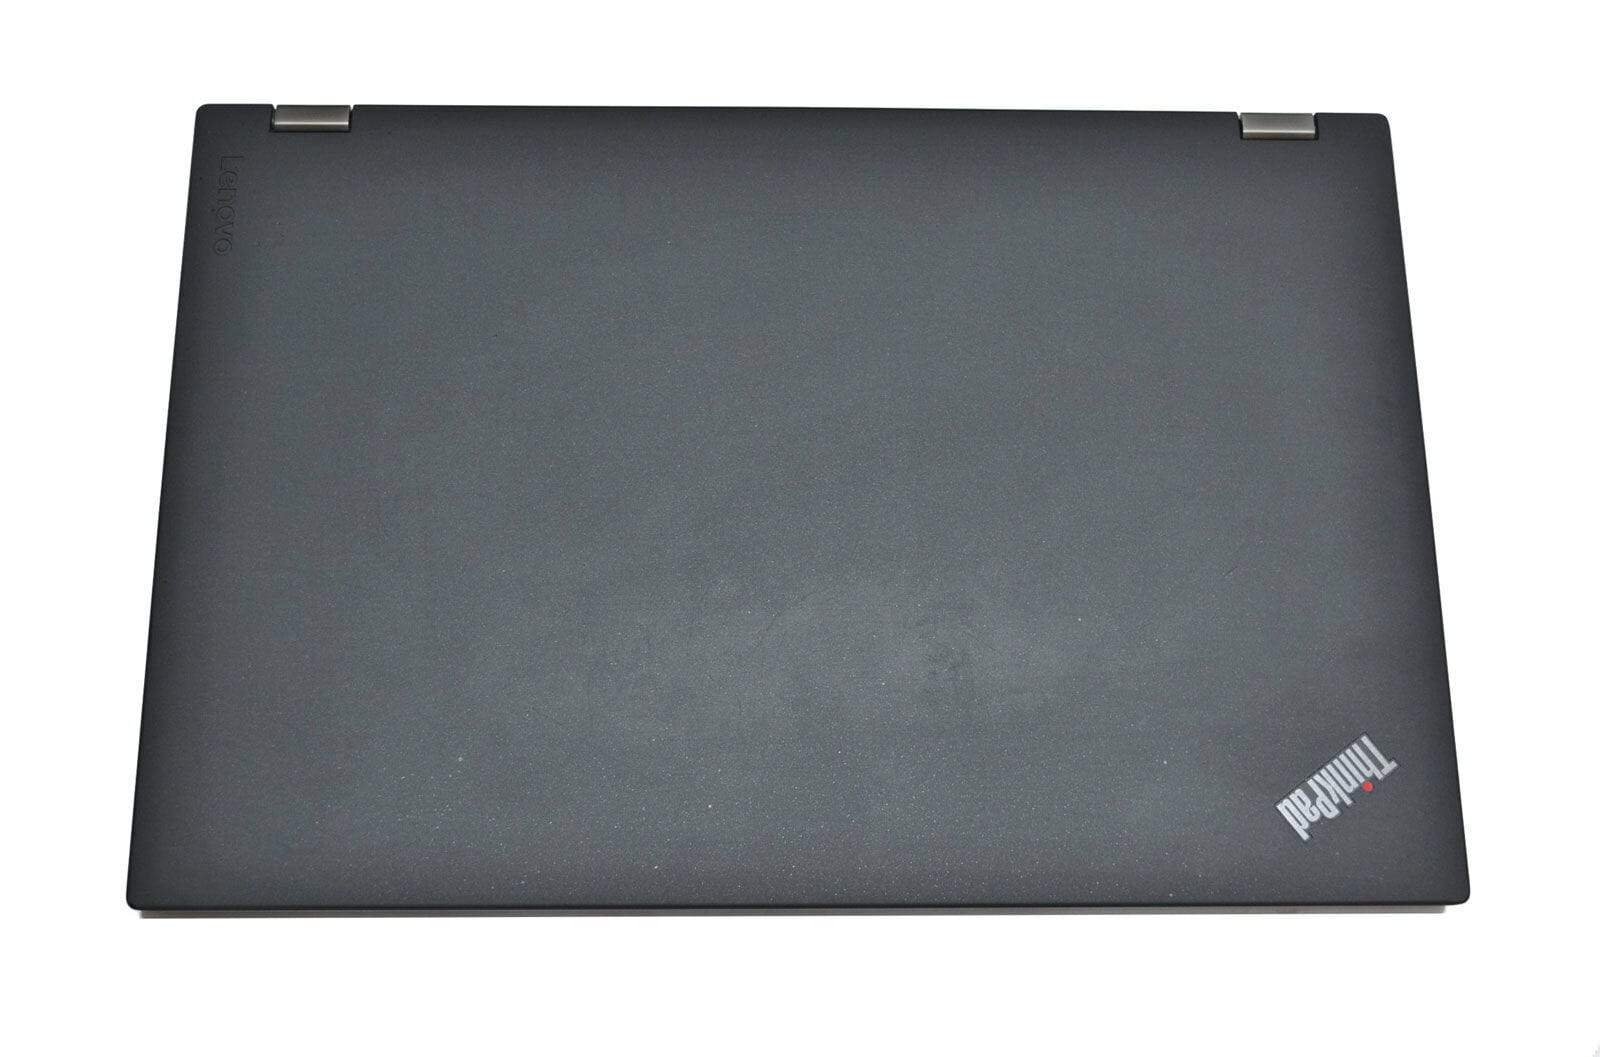 Lenovo Thinkpad P50 Laptop: Core i7-6700HQ, 512GB SSD, Quadro, 16GB RAM - CruiseTech